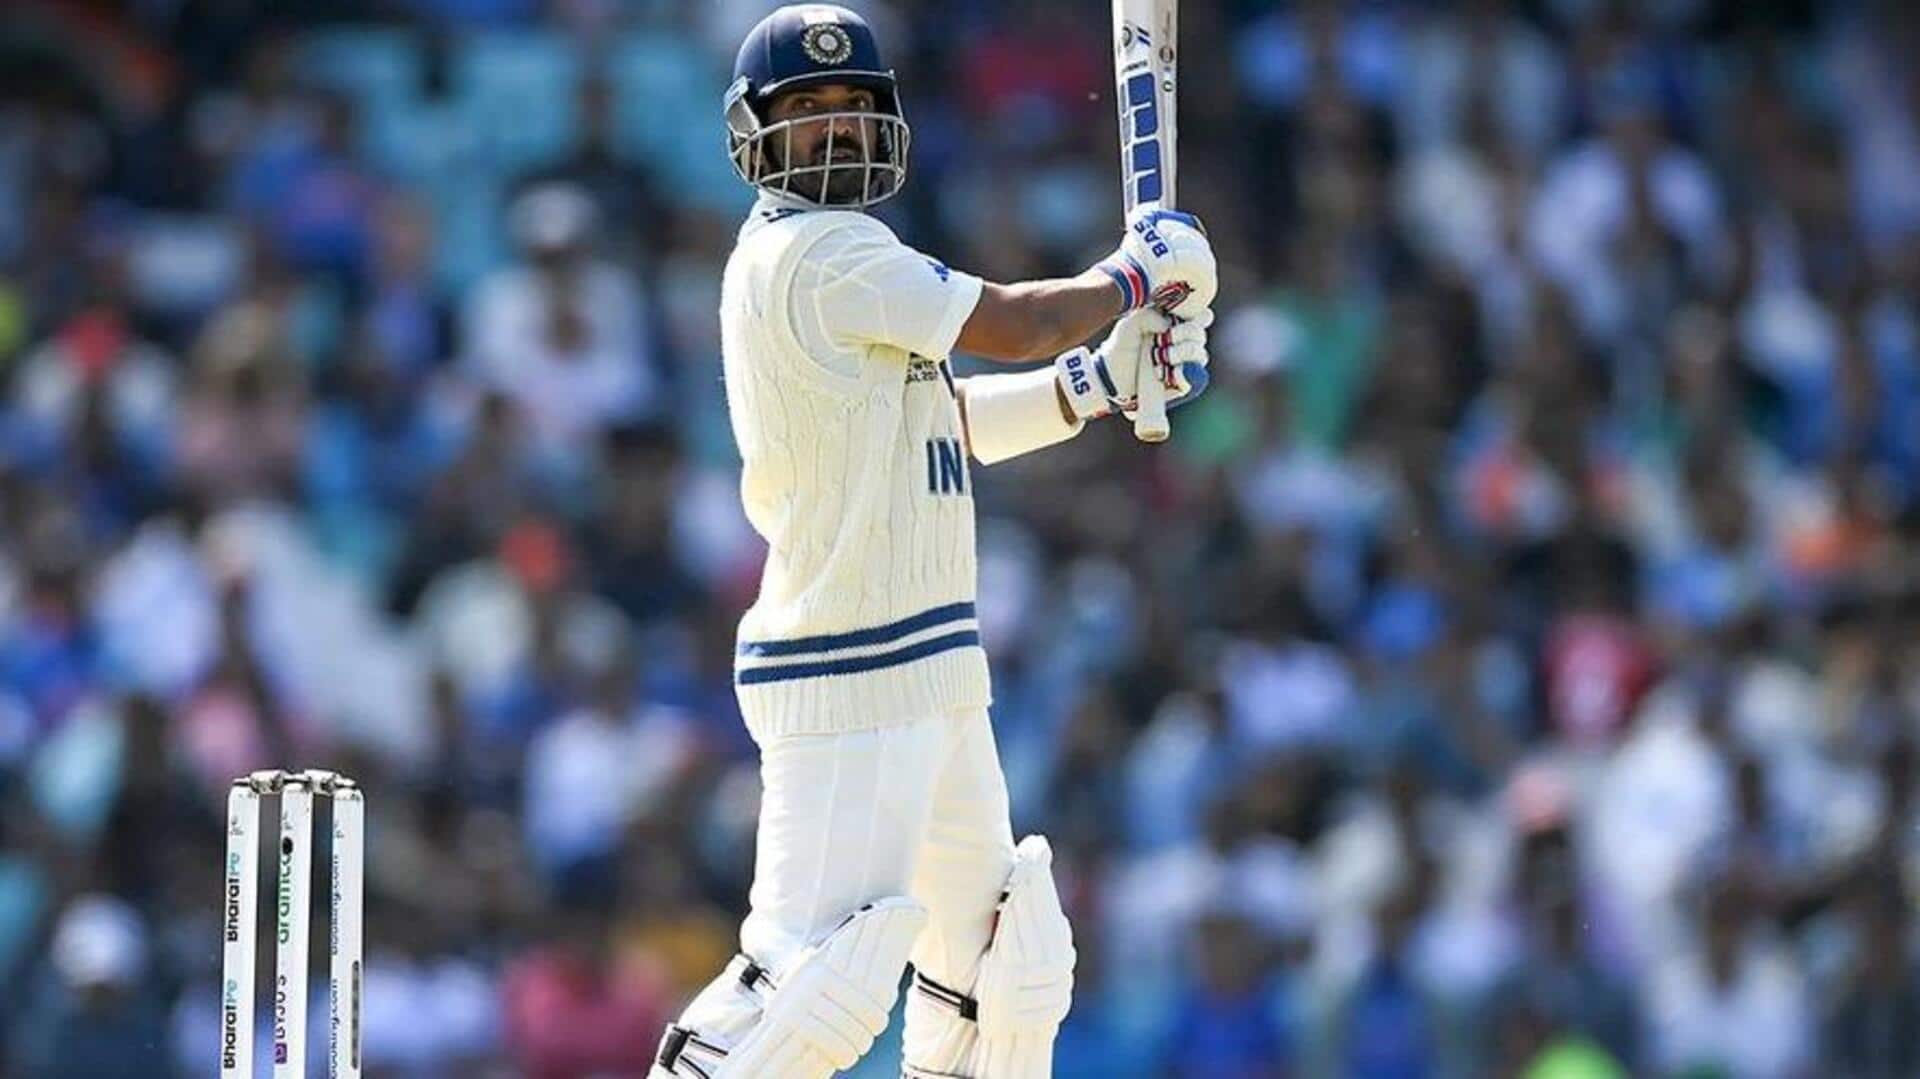 WTC फाइनल में अर्धशतक लगाने वाले पहले भारतीय बल्लेबाज बने अजिंक्य रहाणे, जानिए आंकड़े